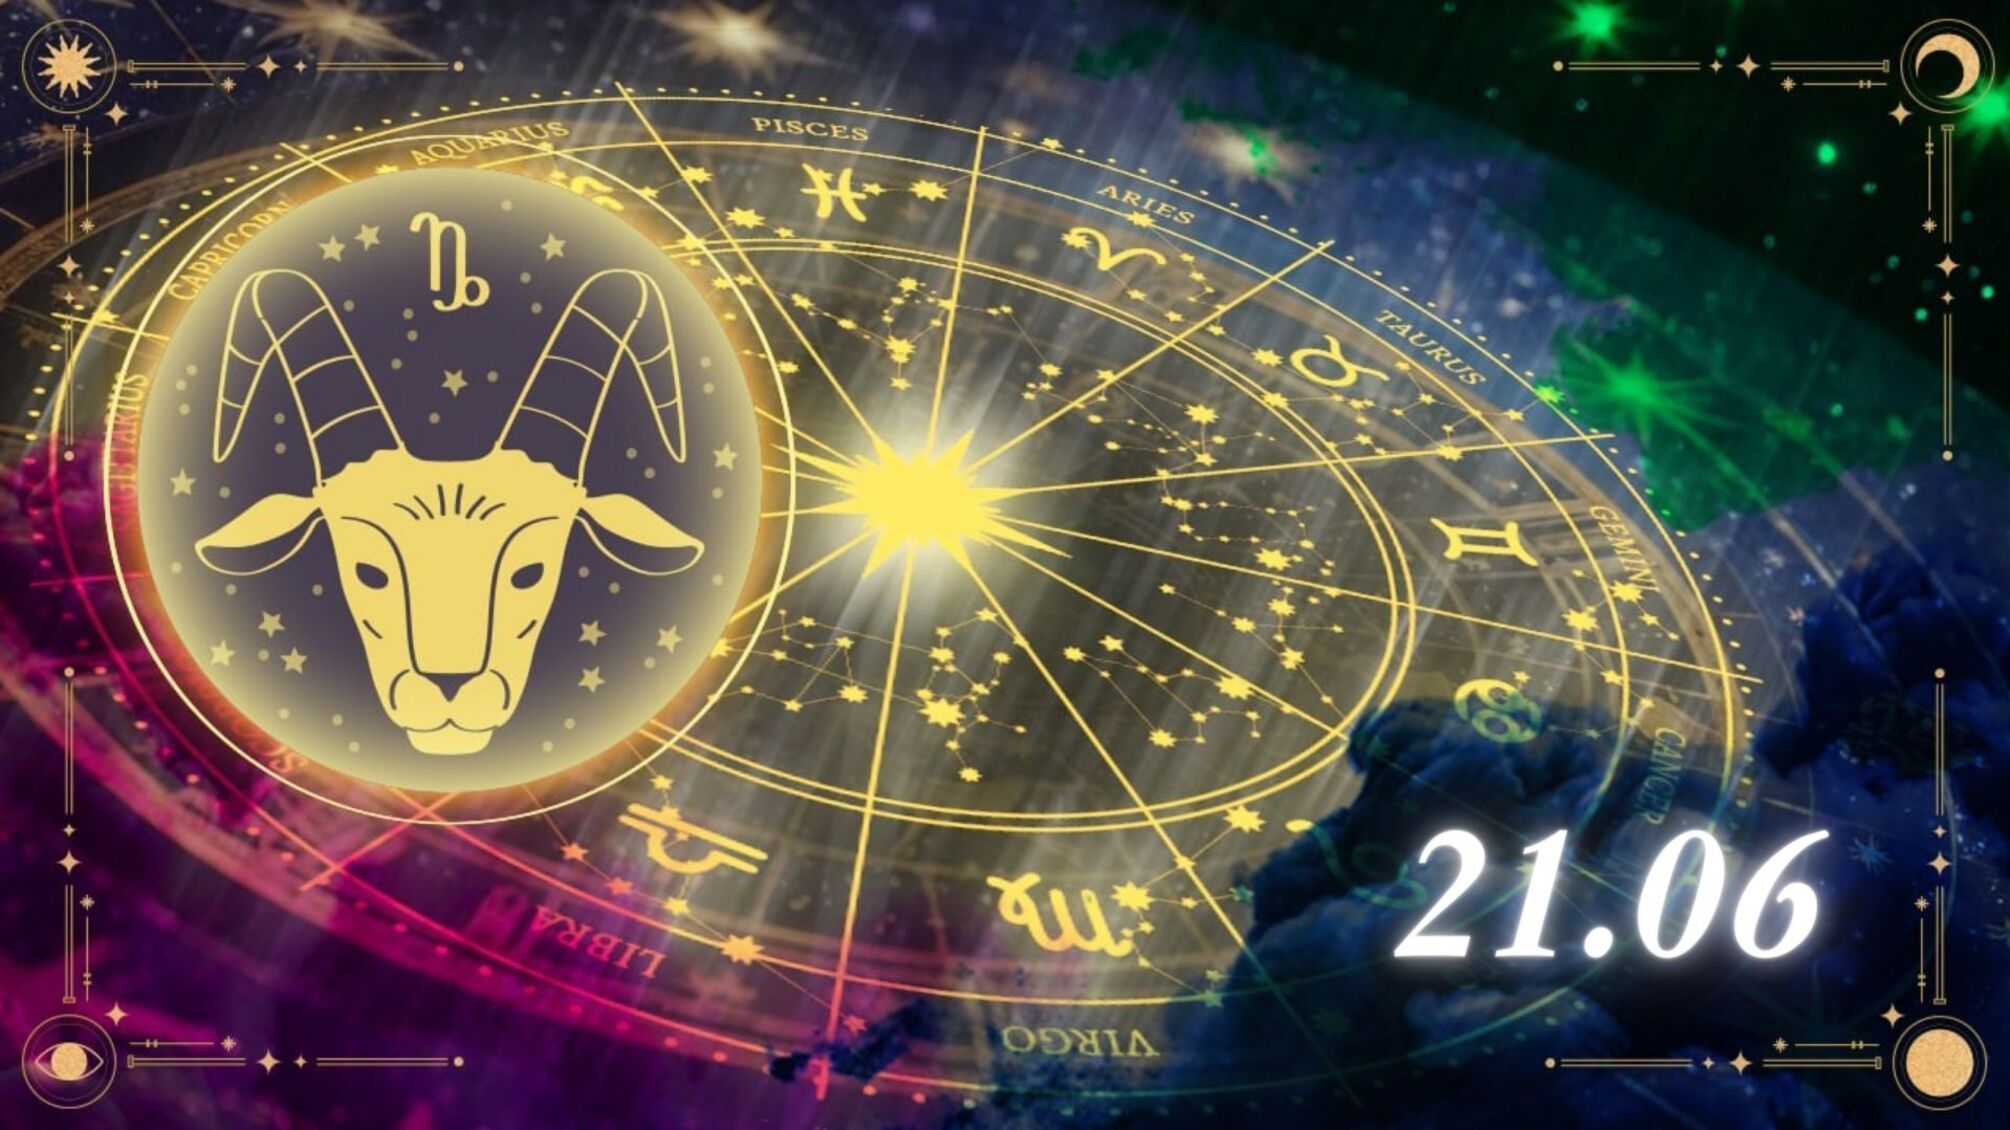 Козороги: будьте готовы к неожиданностям - гороскоп на 21 июня